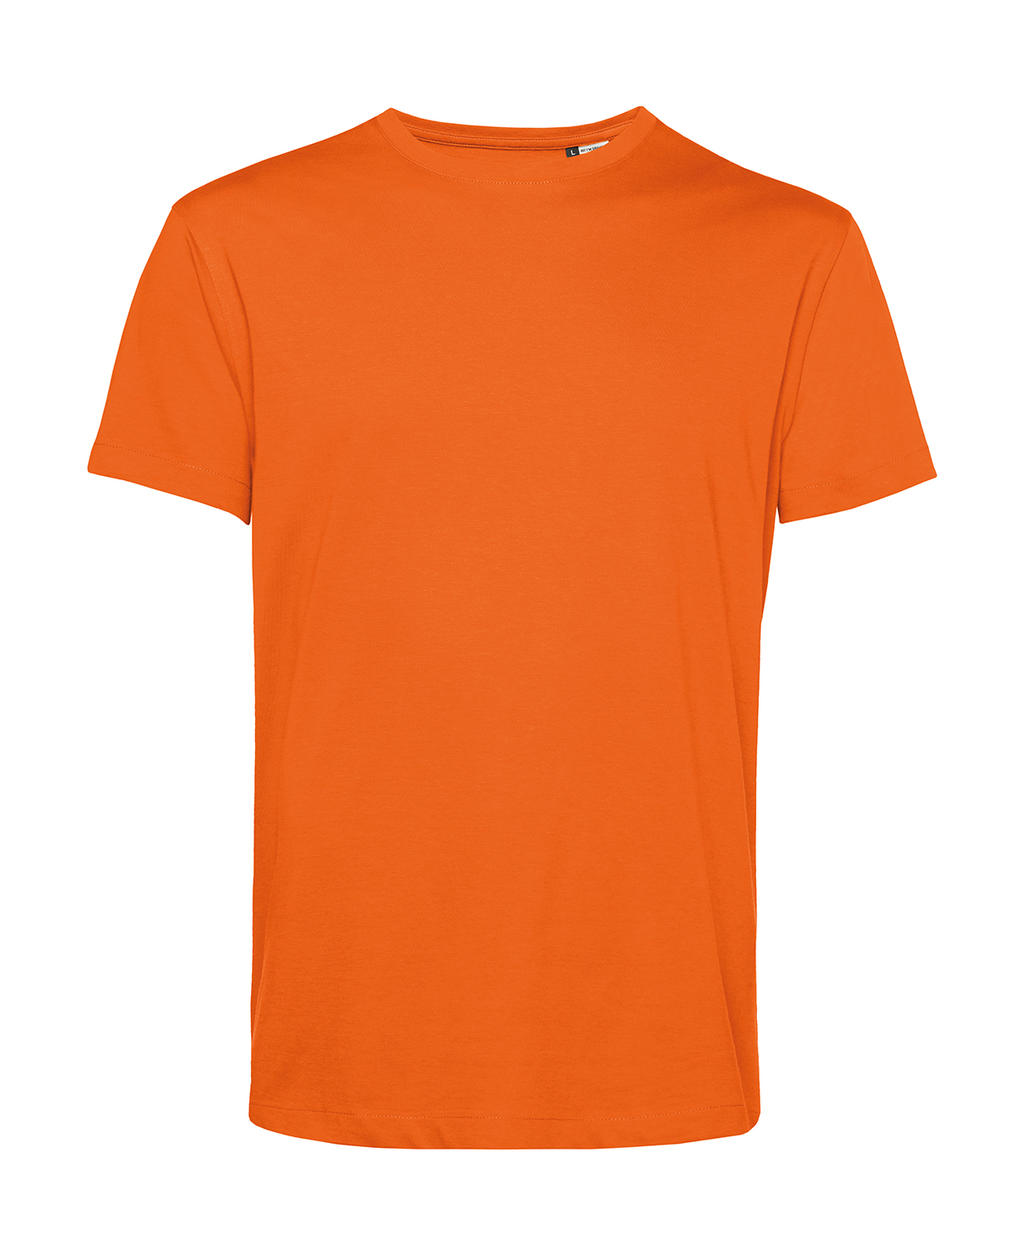 Tričko BC Organic Inspire E150 - oranžové, 3XL